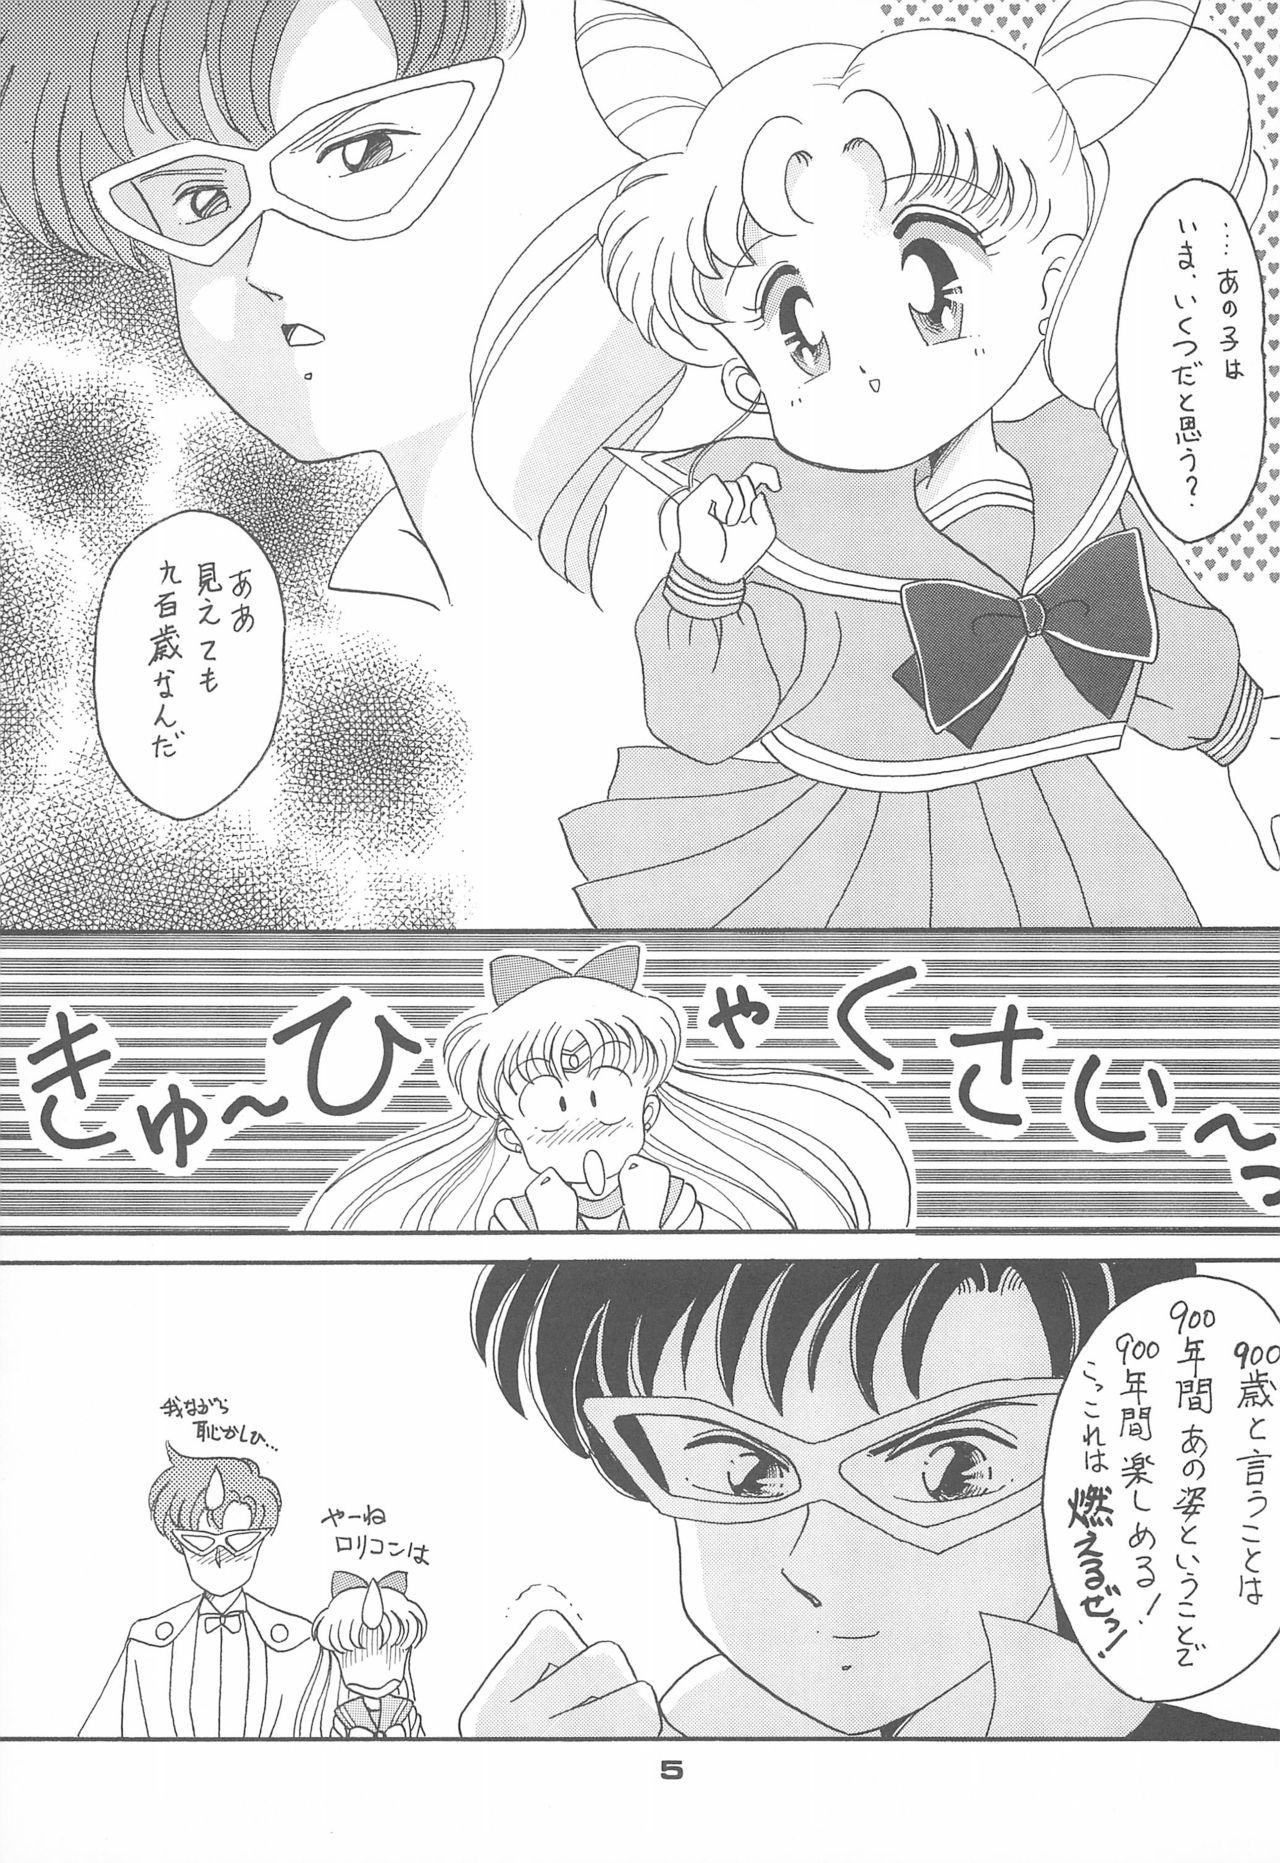 Body Massage Ponponpon 4 - Sailor moon Culo Grande - Page 7